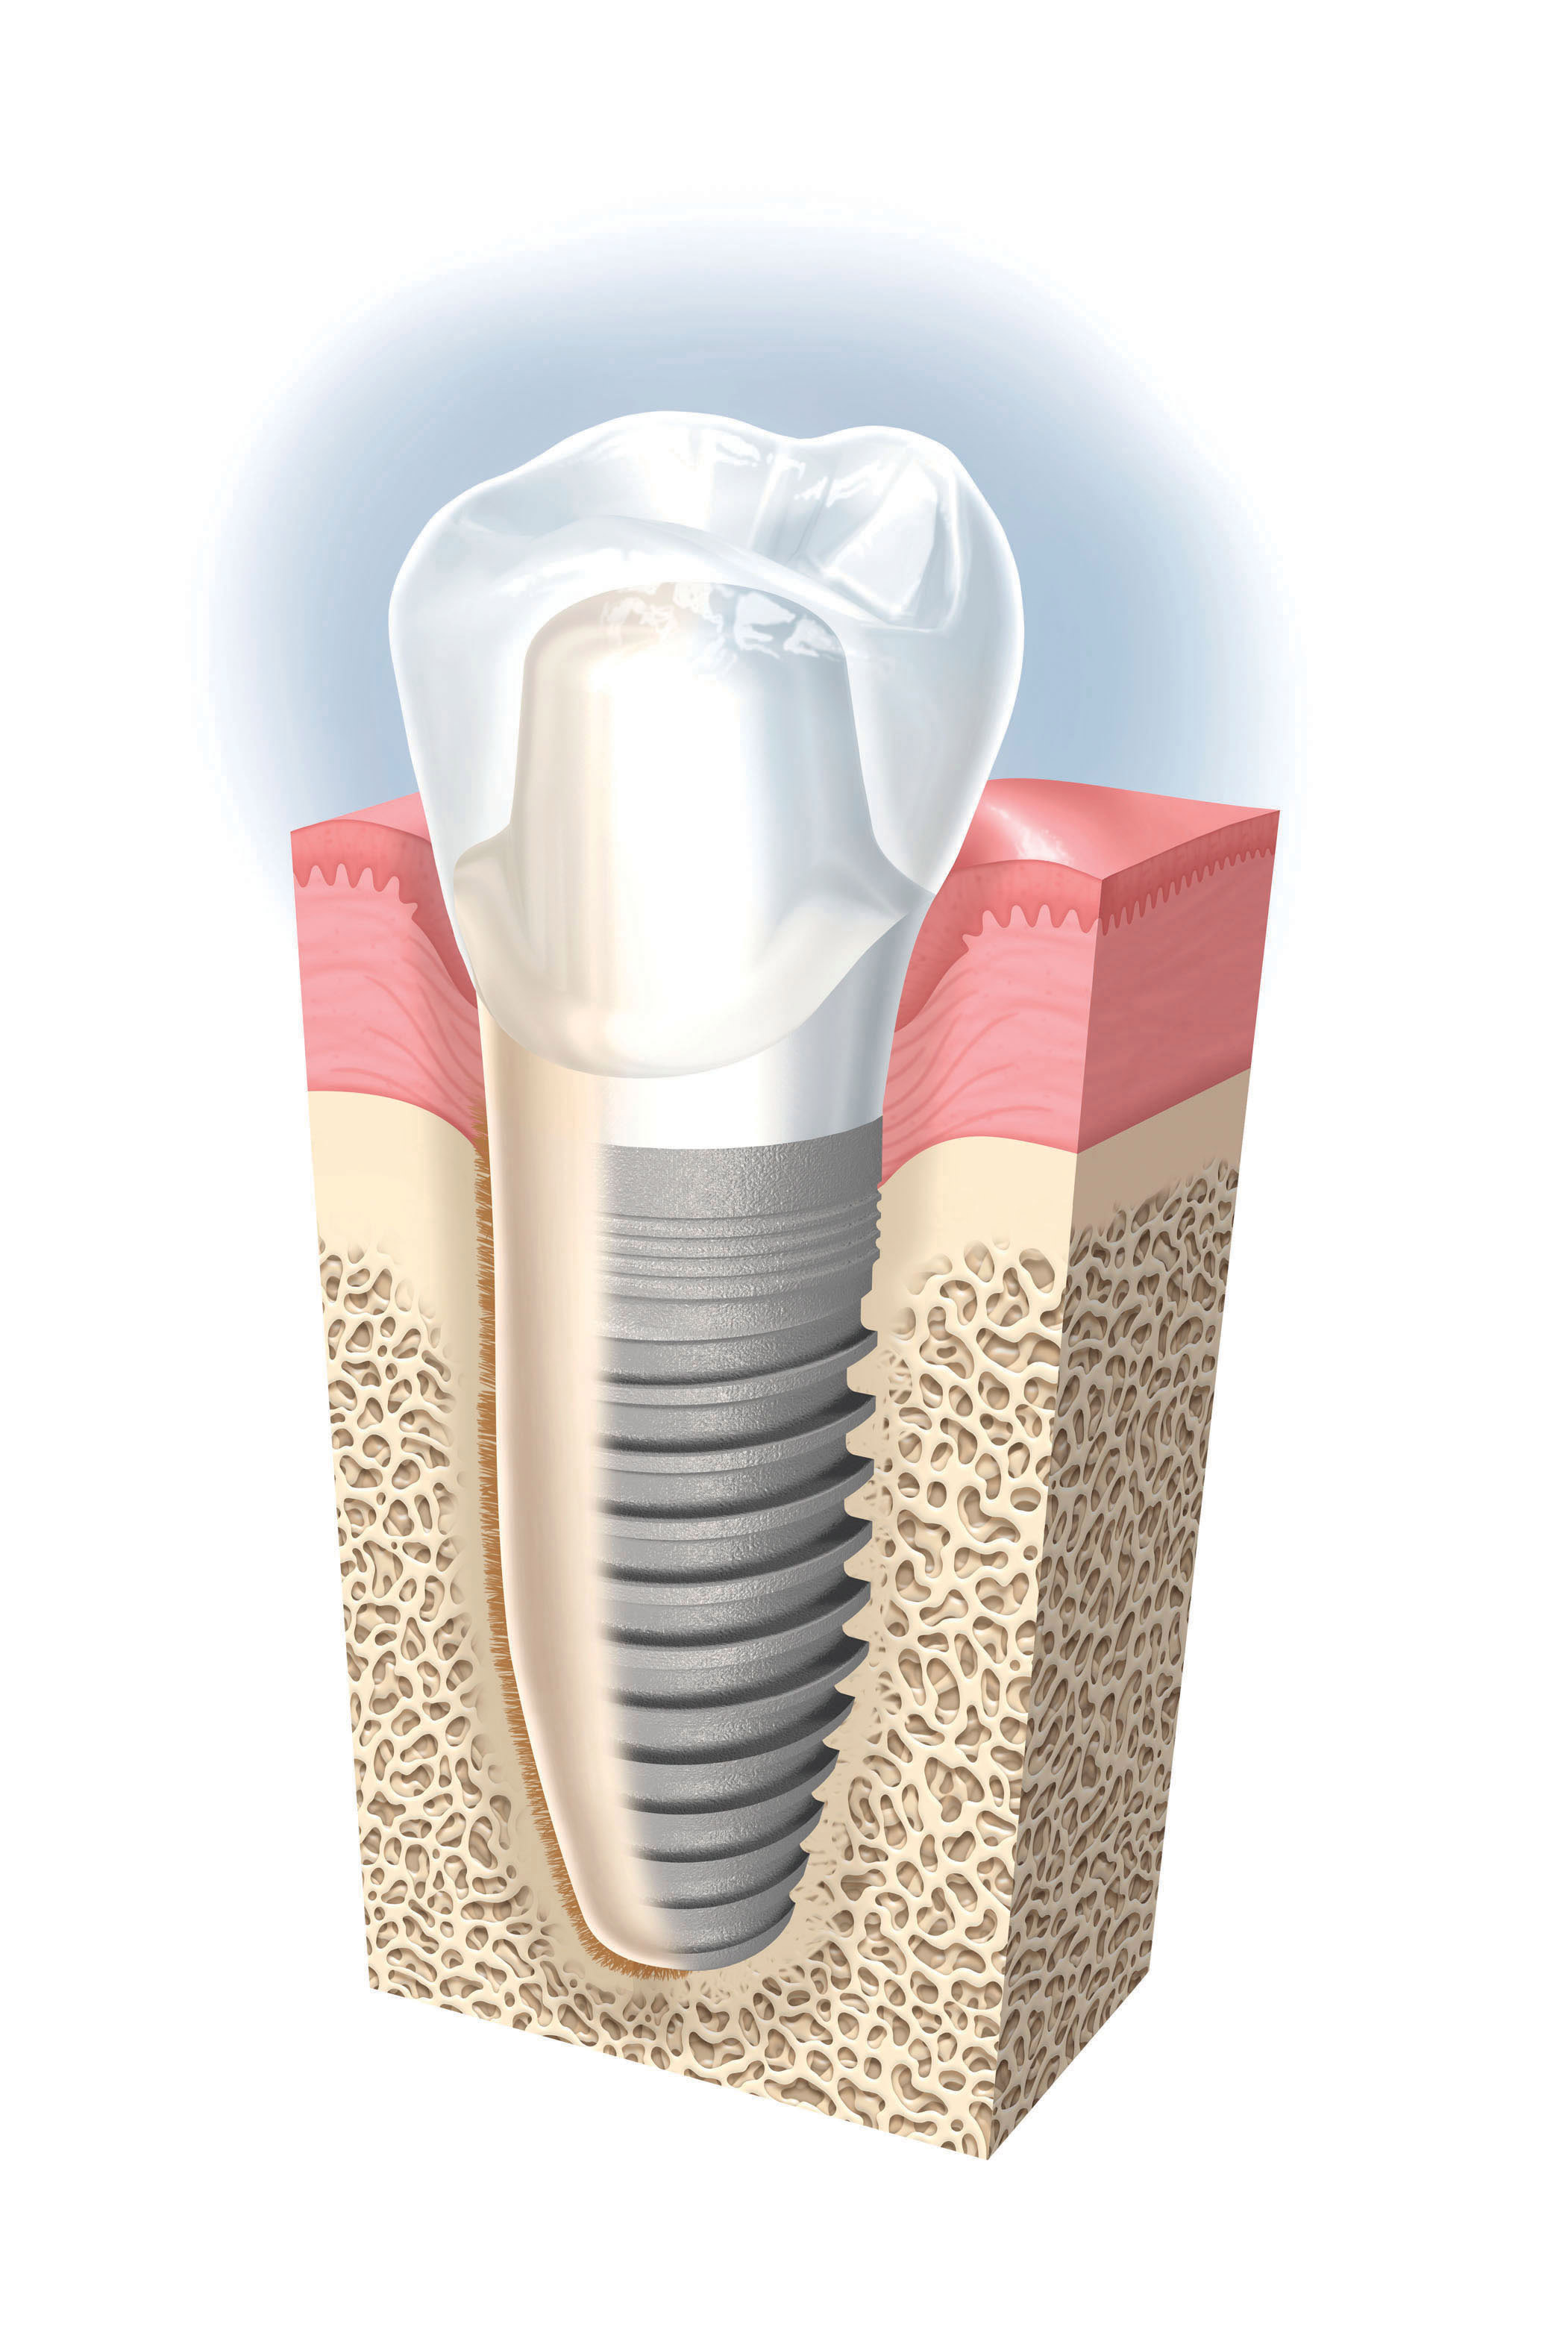 precio de los implantes dentales